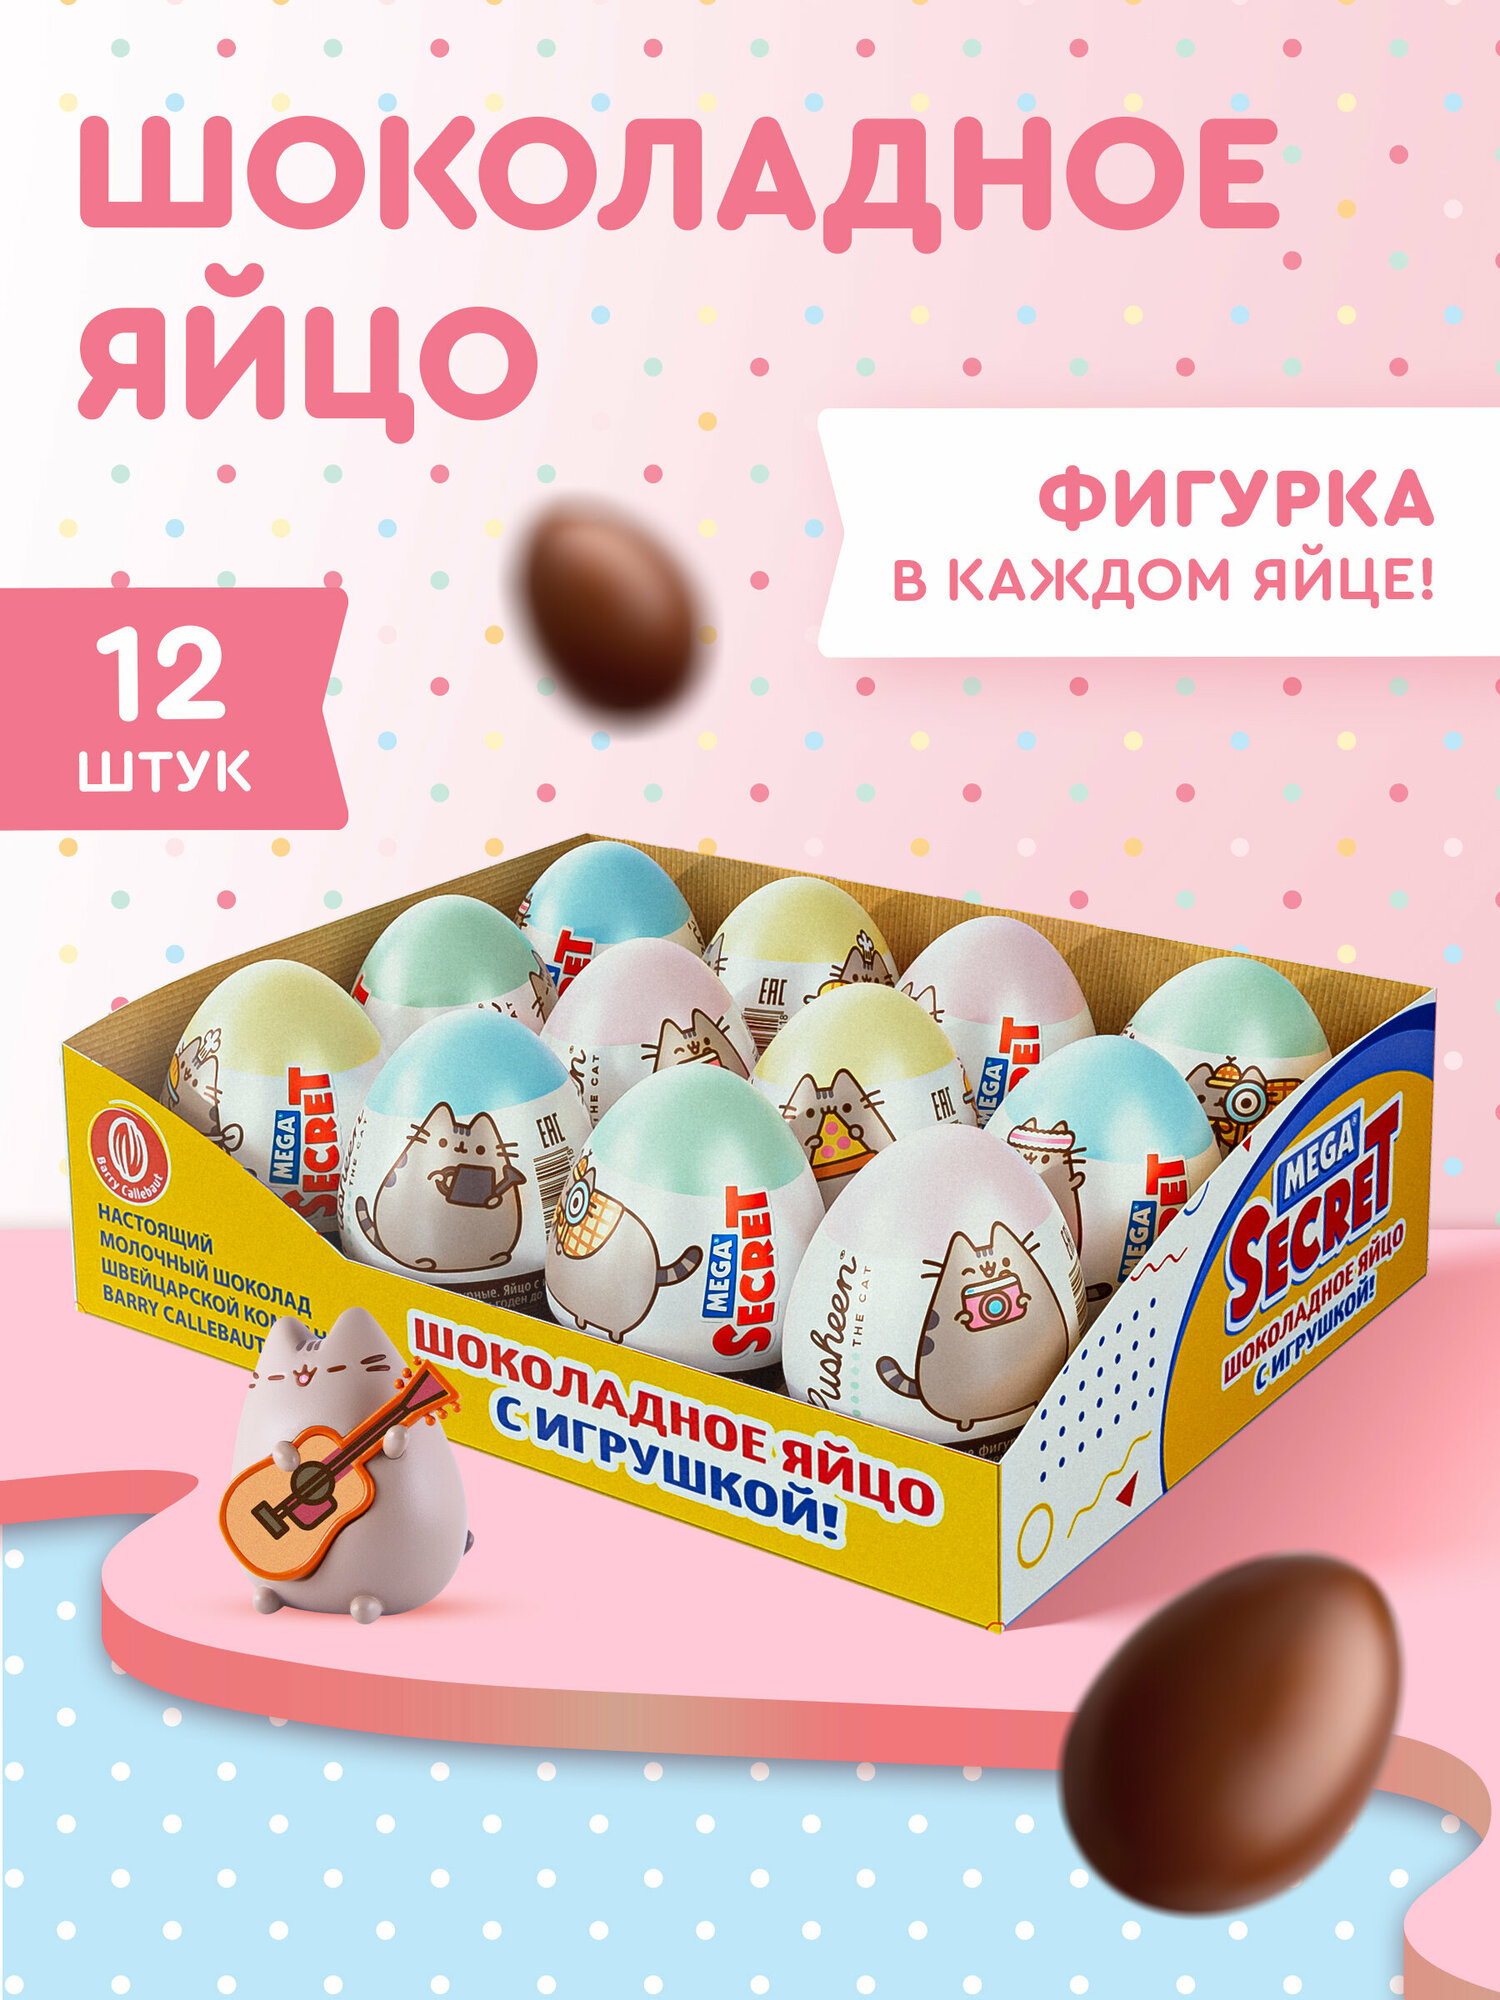 MEGA SECRET PUSHEEN шоколадное яйцо с игрушкой, Пушин, 12 шт.